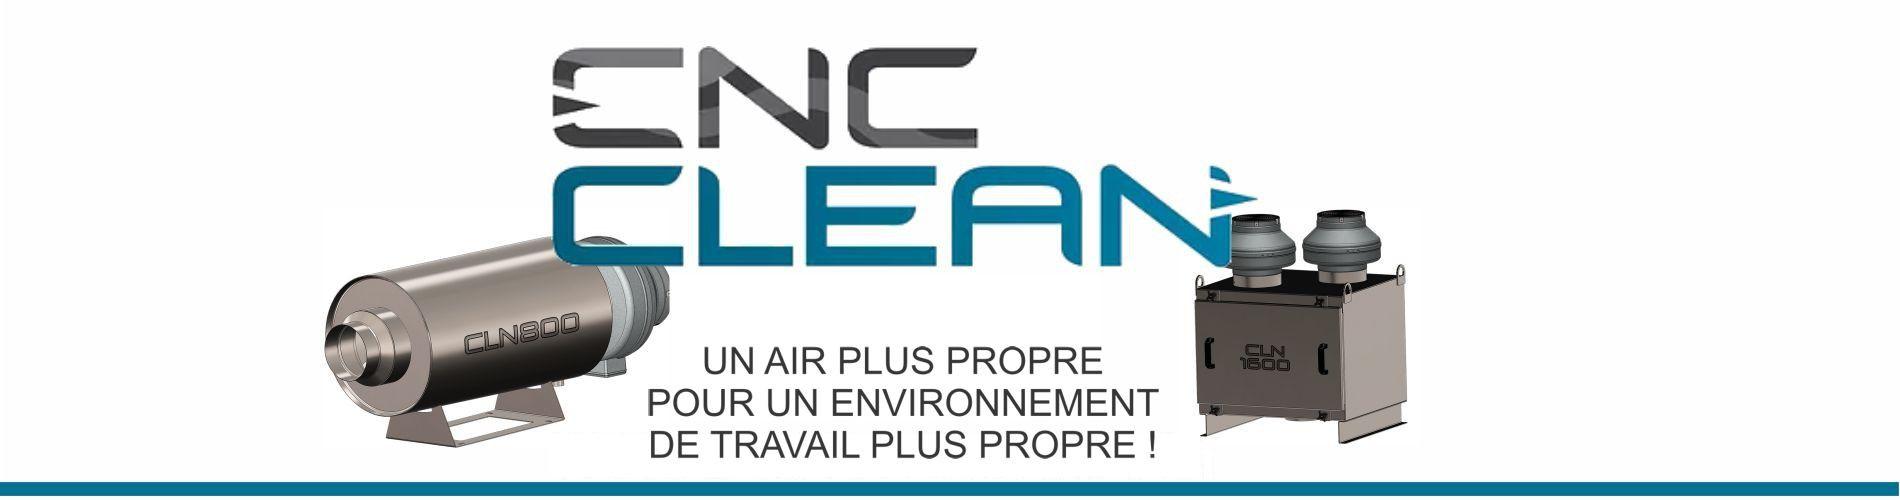 cnc-clean-1900x500_fr